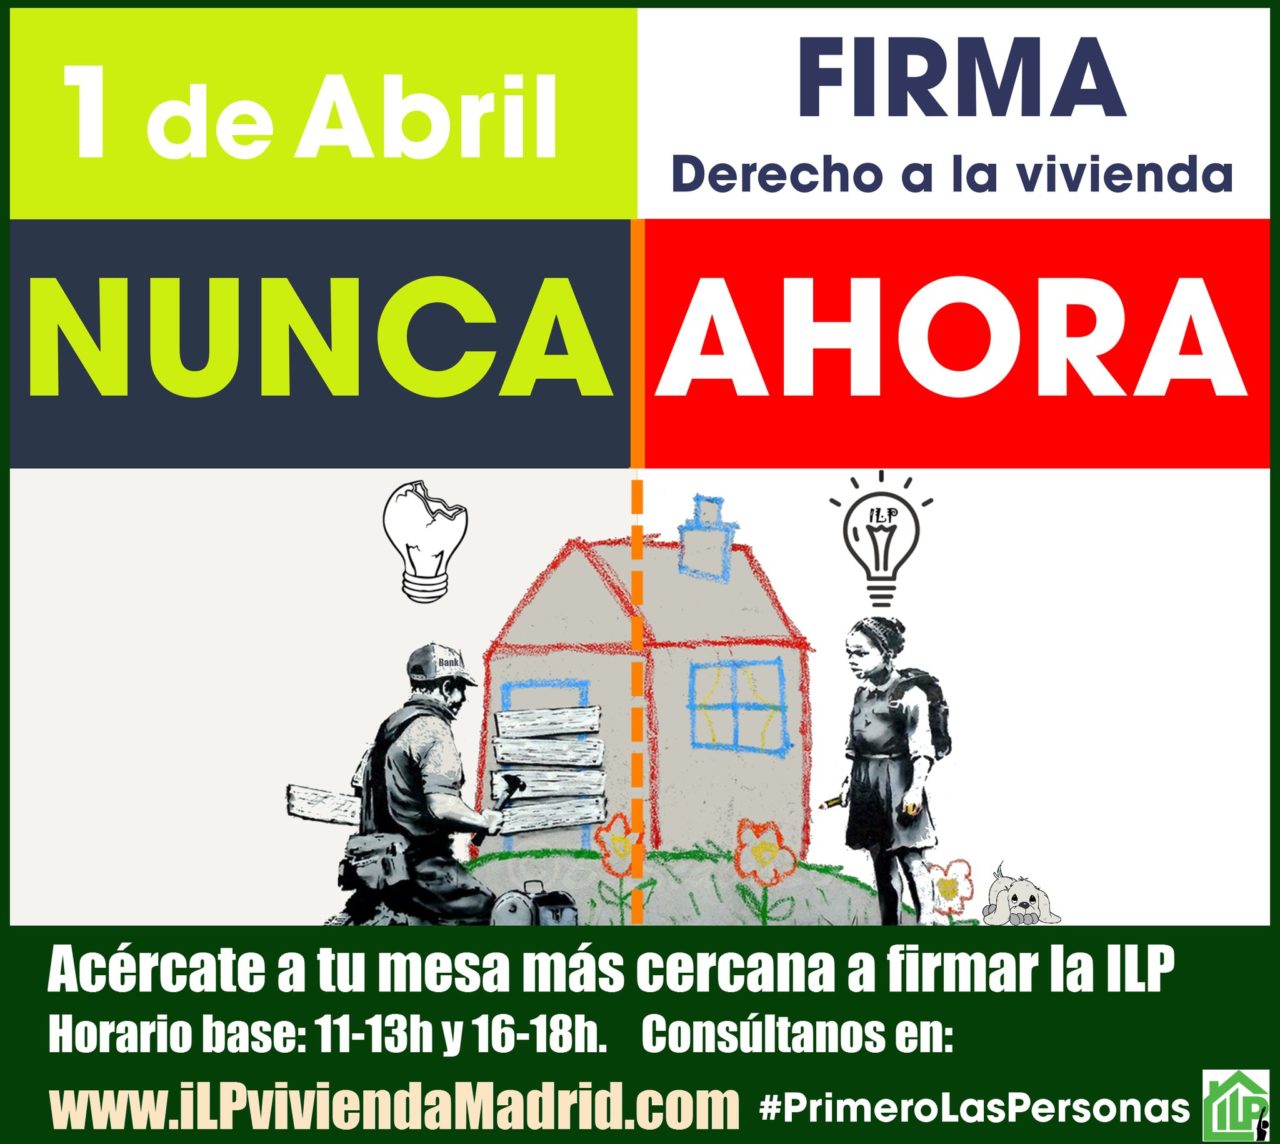 1 de abril: gran jornada de recogida de firmas para la ILP de vivienda